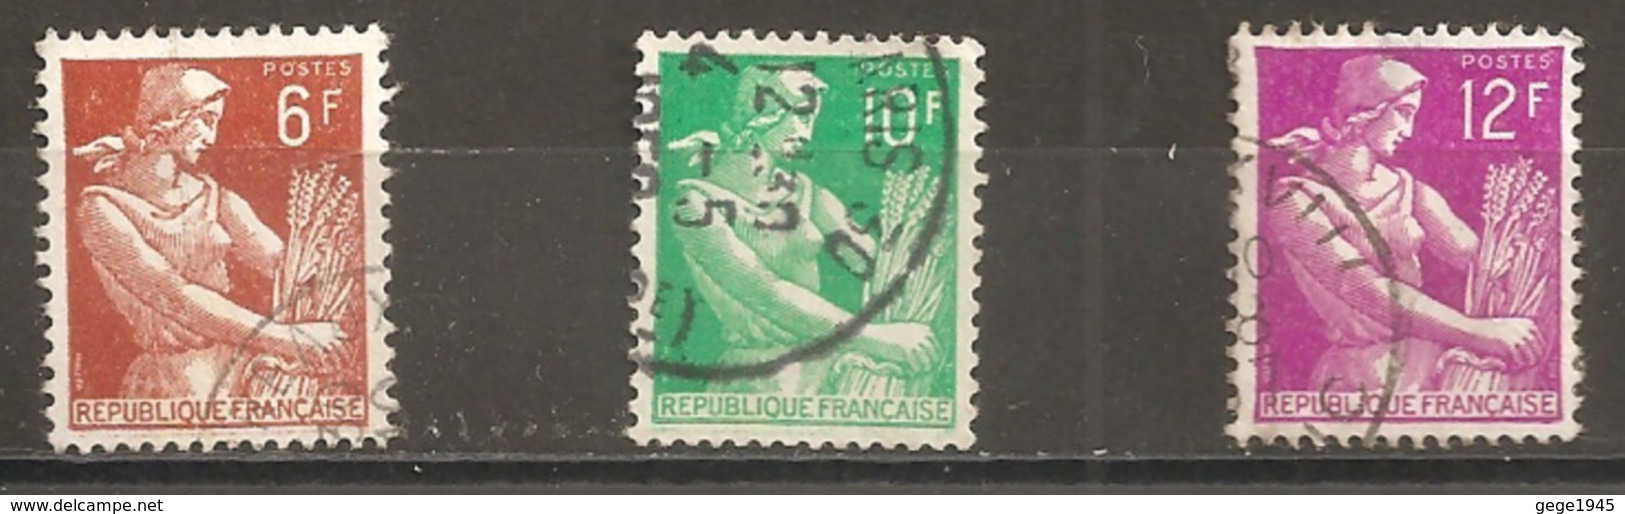 France 1957  Oblitéré   N° 1115  - 1115A  - 1116   -  Type Moissonneuse - 1957-1959 Mietitrice